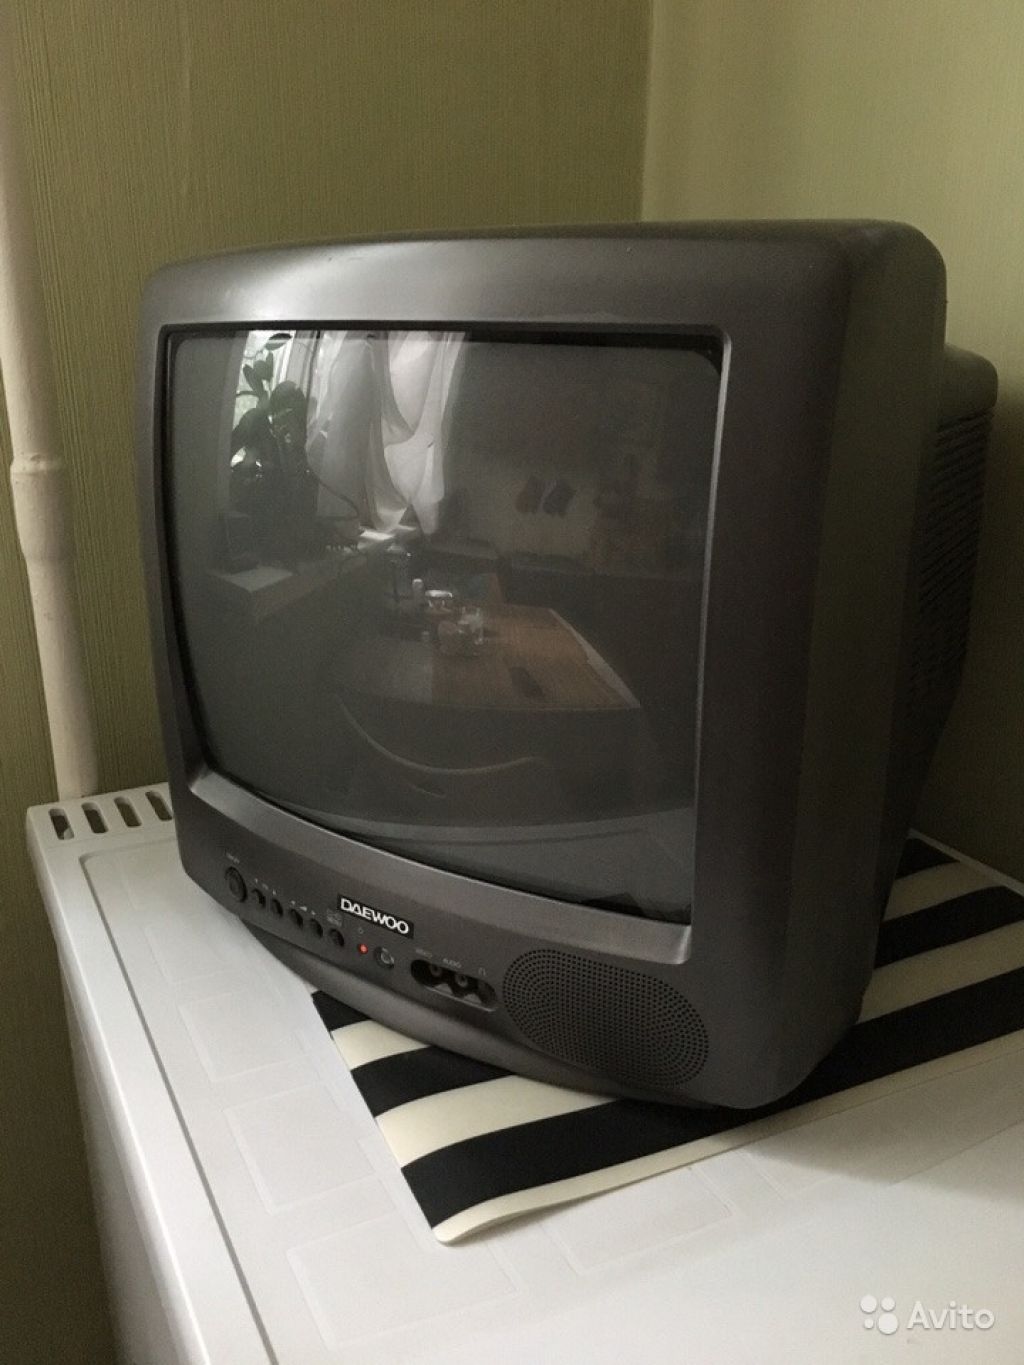 Авито санкт петербурге телевизоры. Маленький телевизор Daewoo. Телевизор Daewoo цветной маленький. Б У телевизор маленький. Daewoo маленький телевизор цветной серебристый.